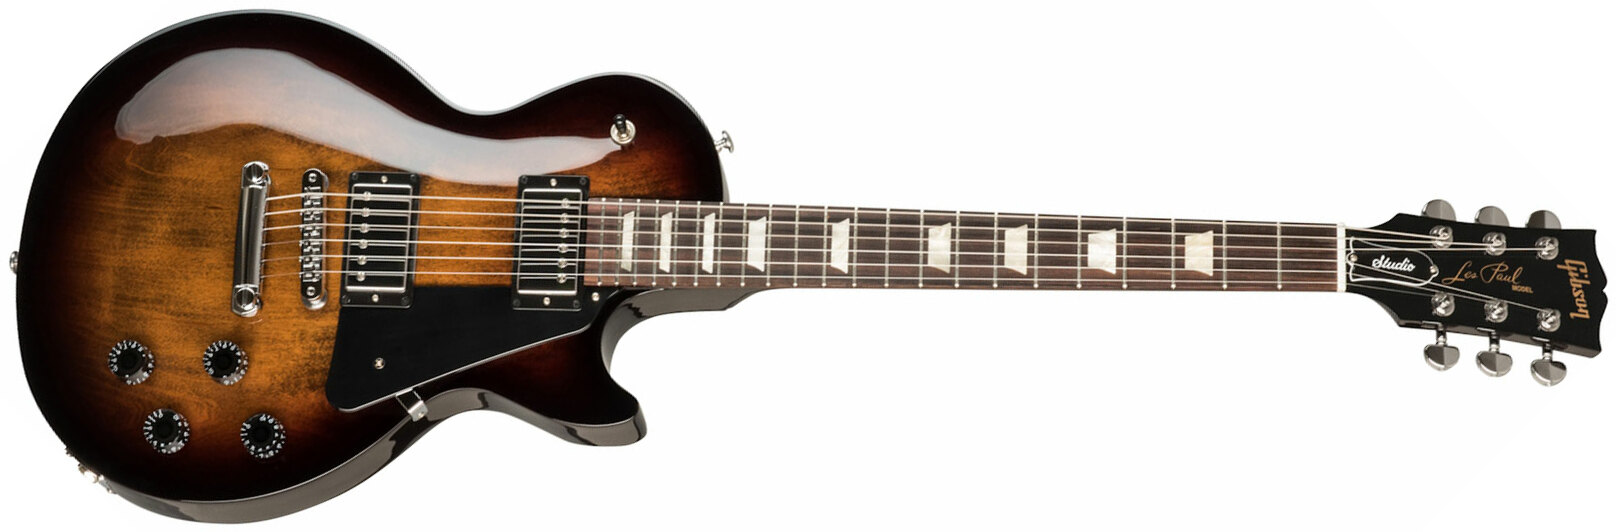 Gibson Les Paul Studio Modern 2h Ht Rw - Smokehouse Burst - Guitare Électrique Single Cut - Main picture